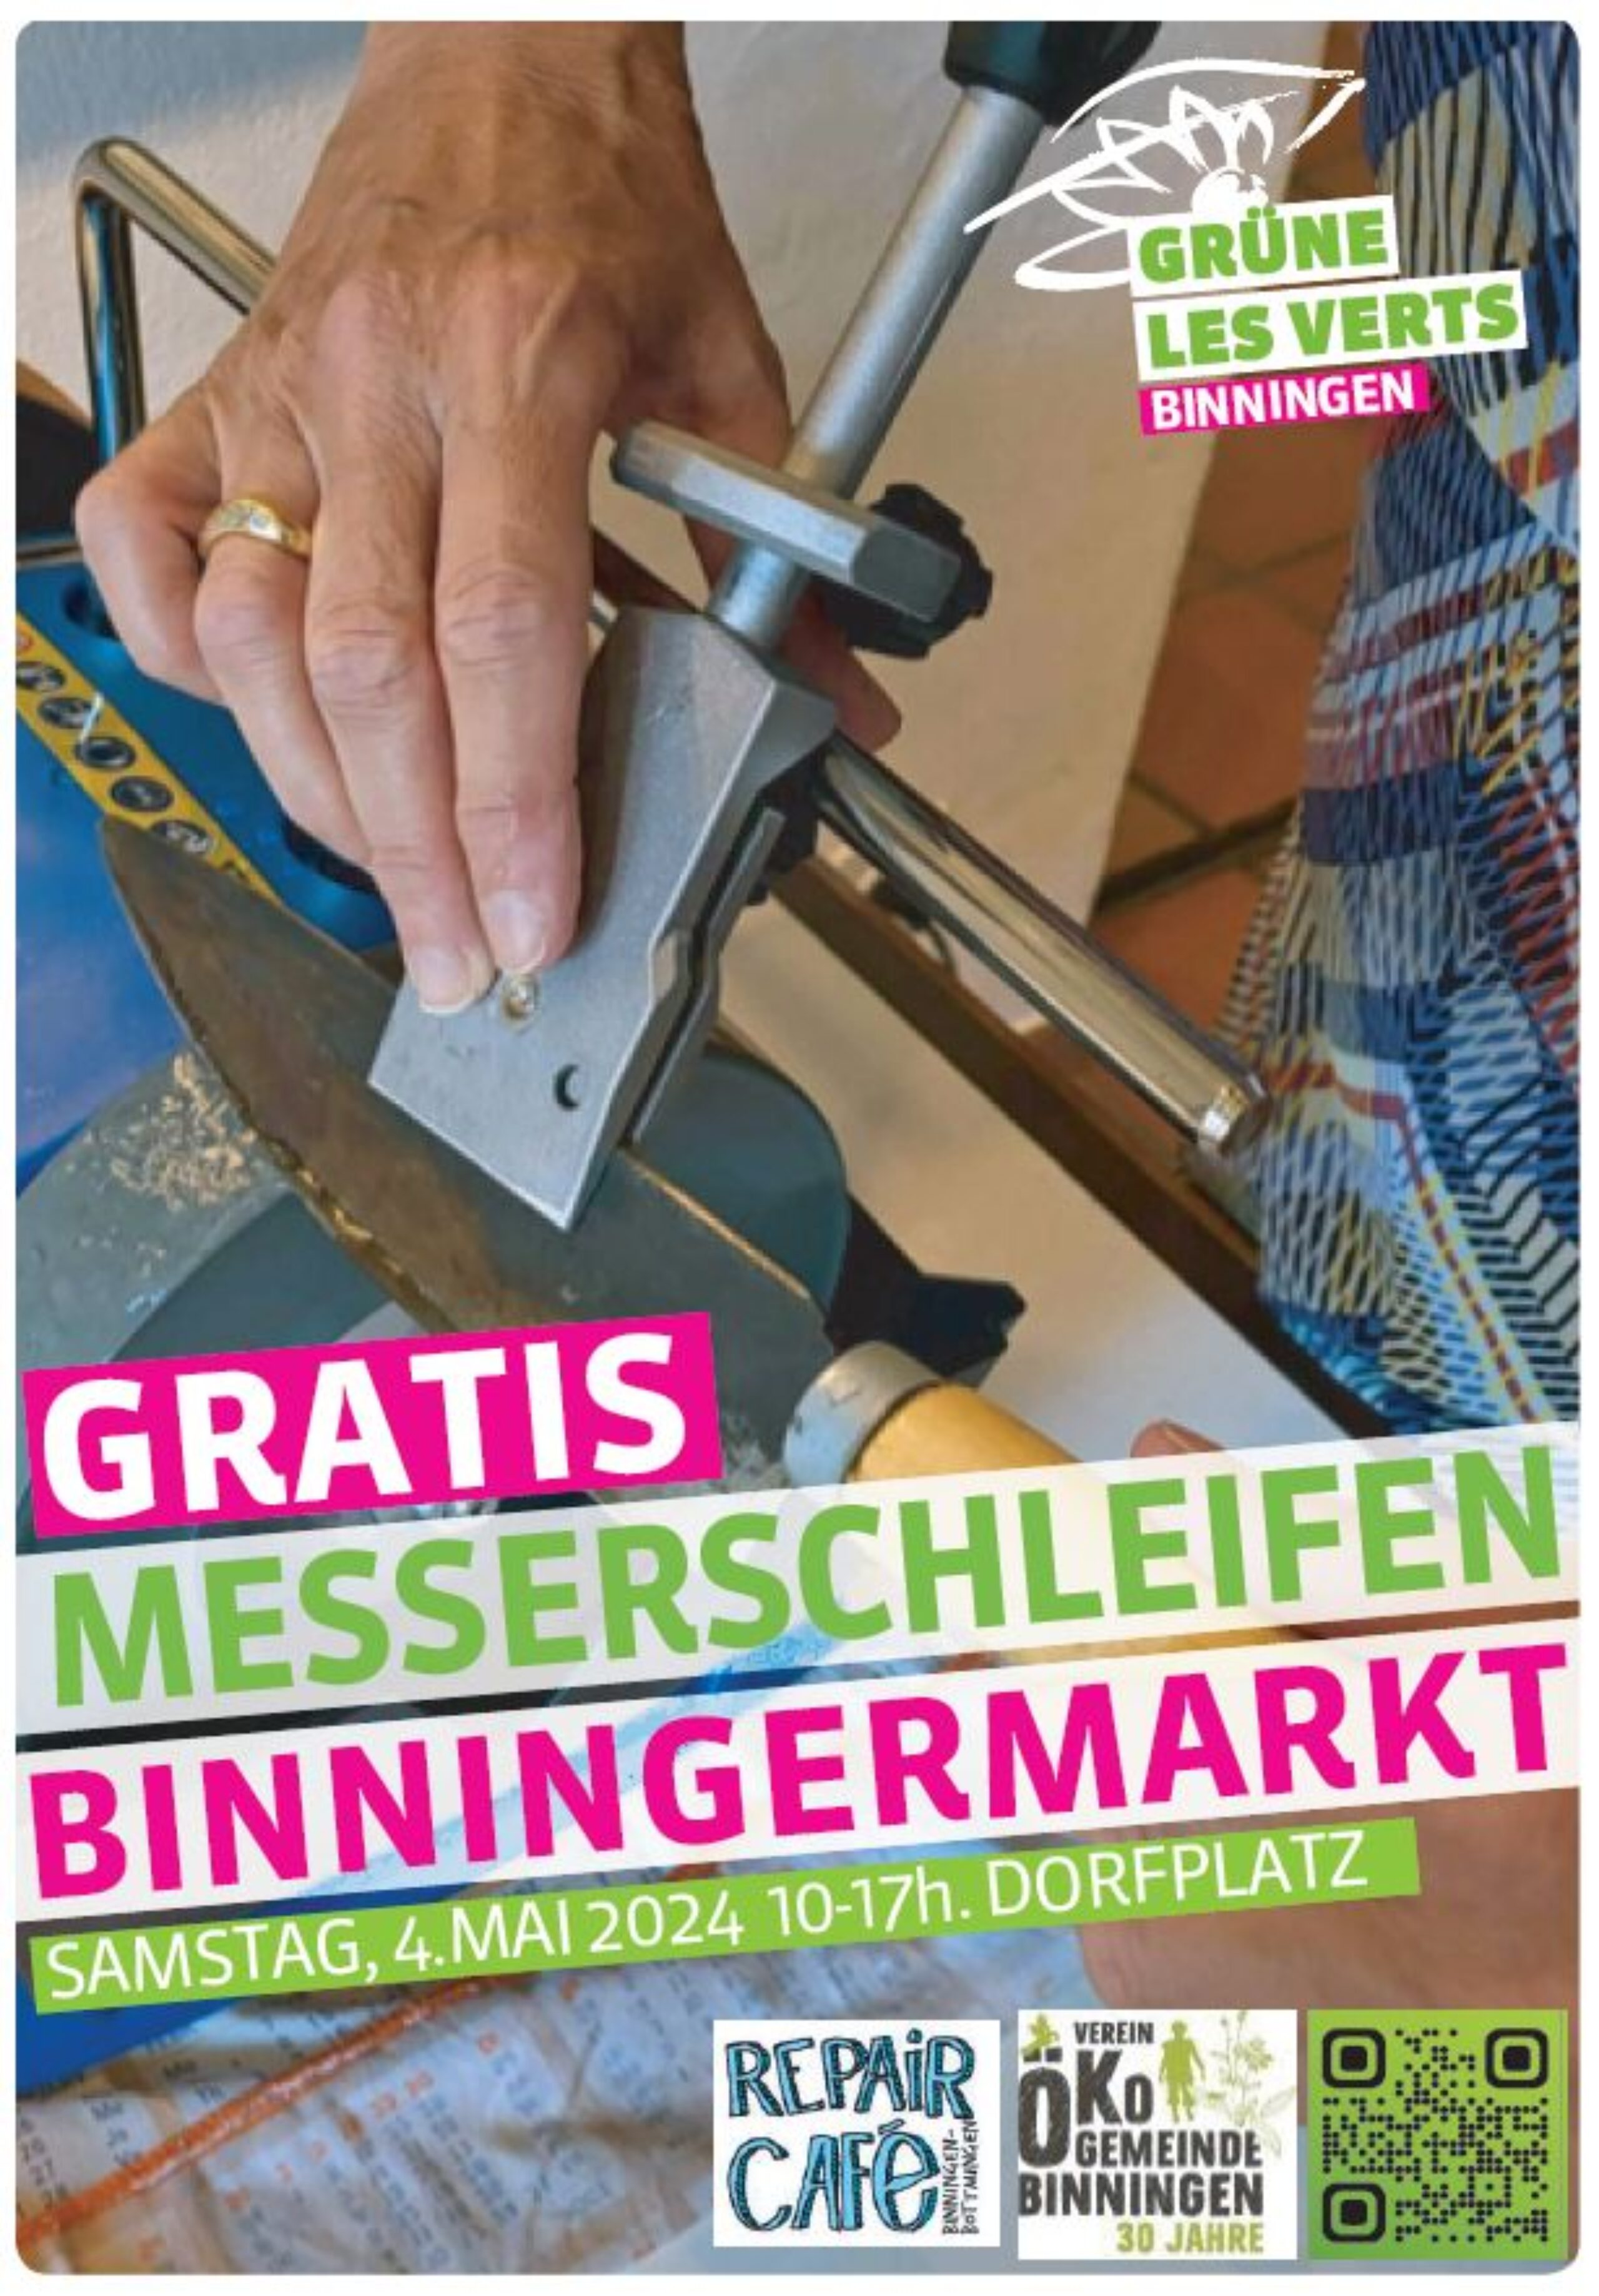 Gratis Messerschleifen bei den Grünen Binningen am Frühjarsmarkt am 4. Mai 2024